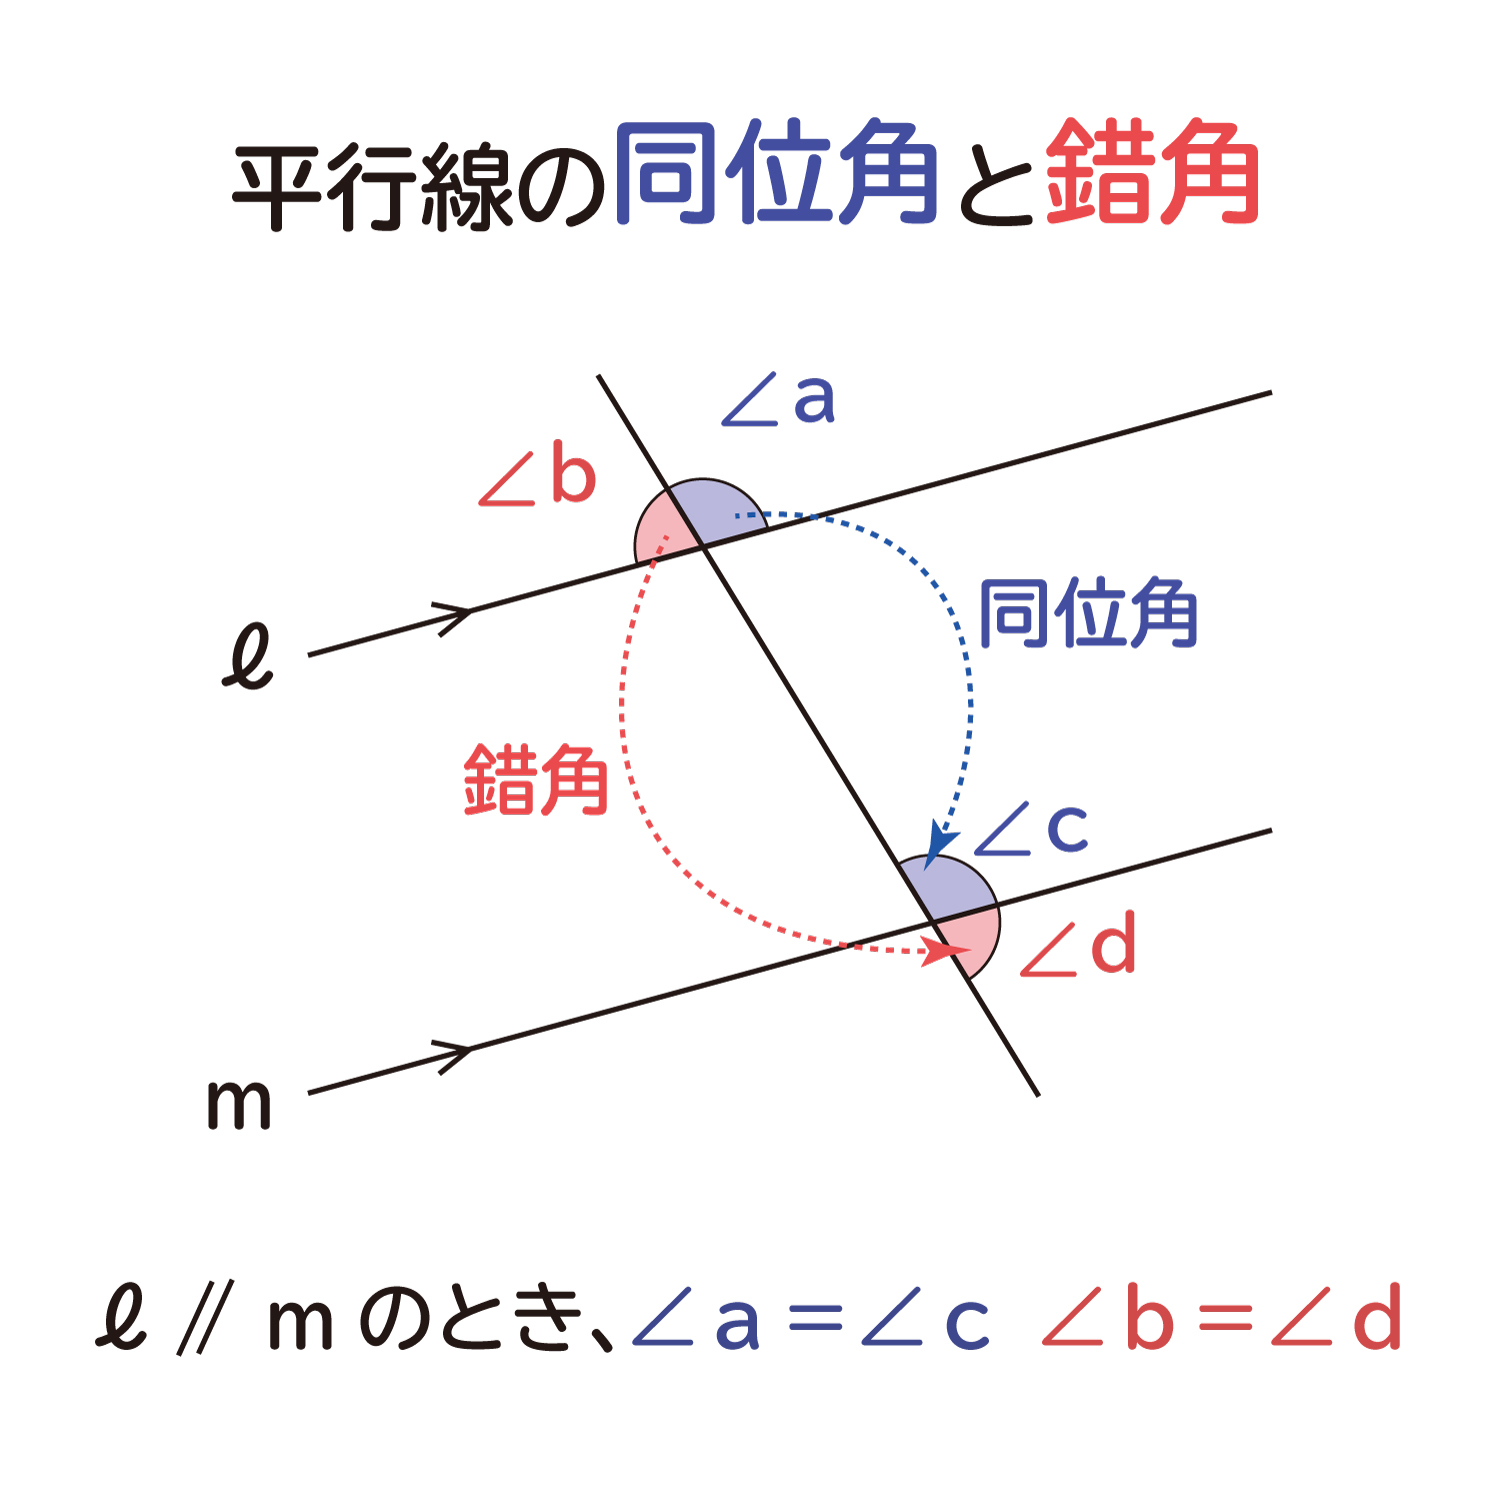 中学生の数学で出る、平行線の同位角（どういかく）と錯角（さっかく）の性質